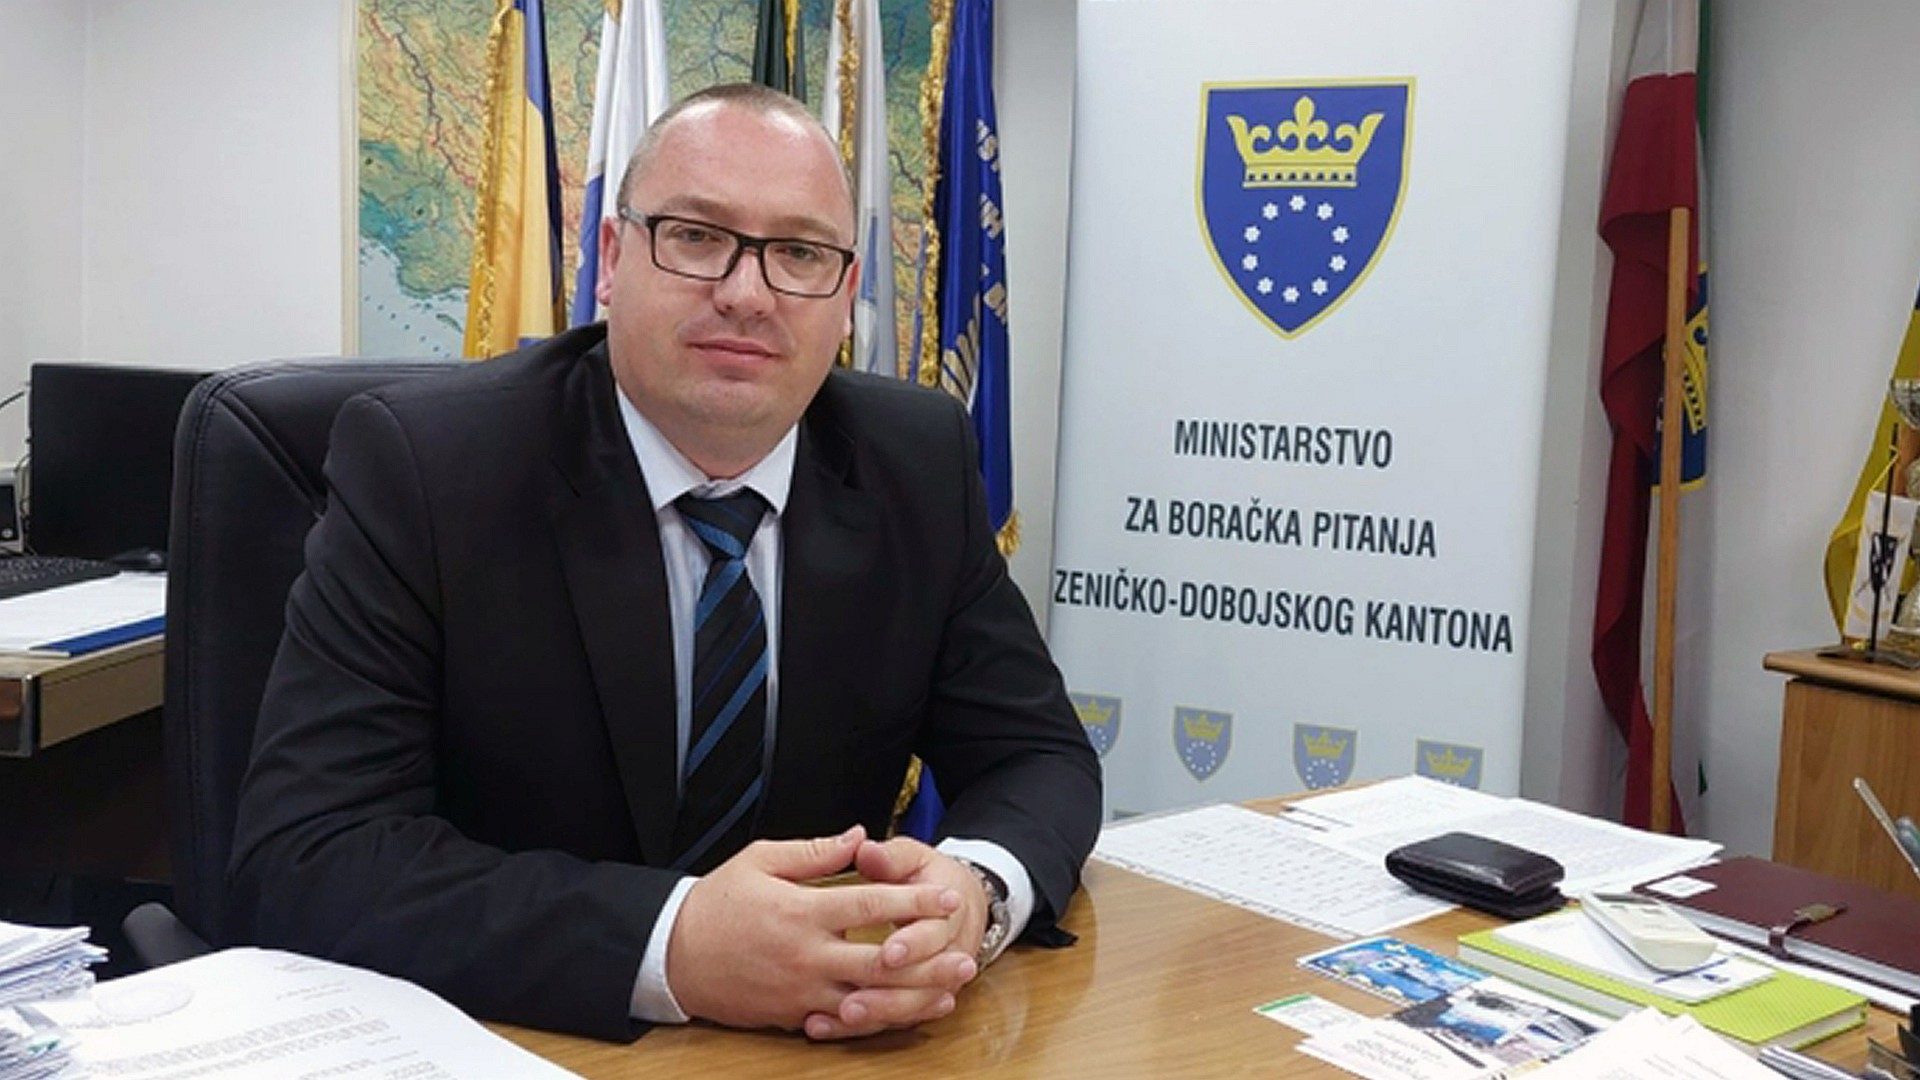 Adnan Sirovica / Ministarstvo za boračka pitanja